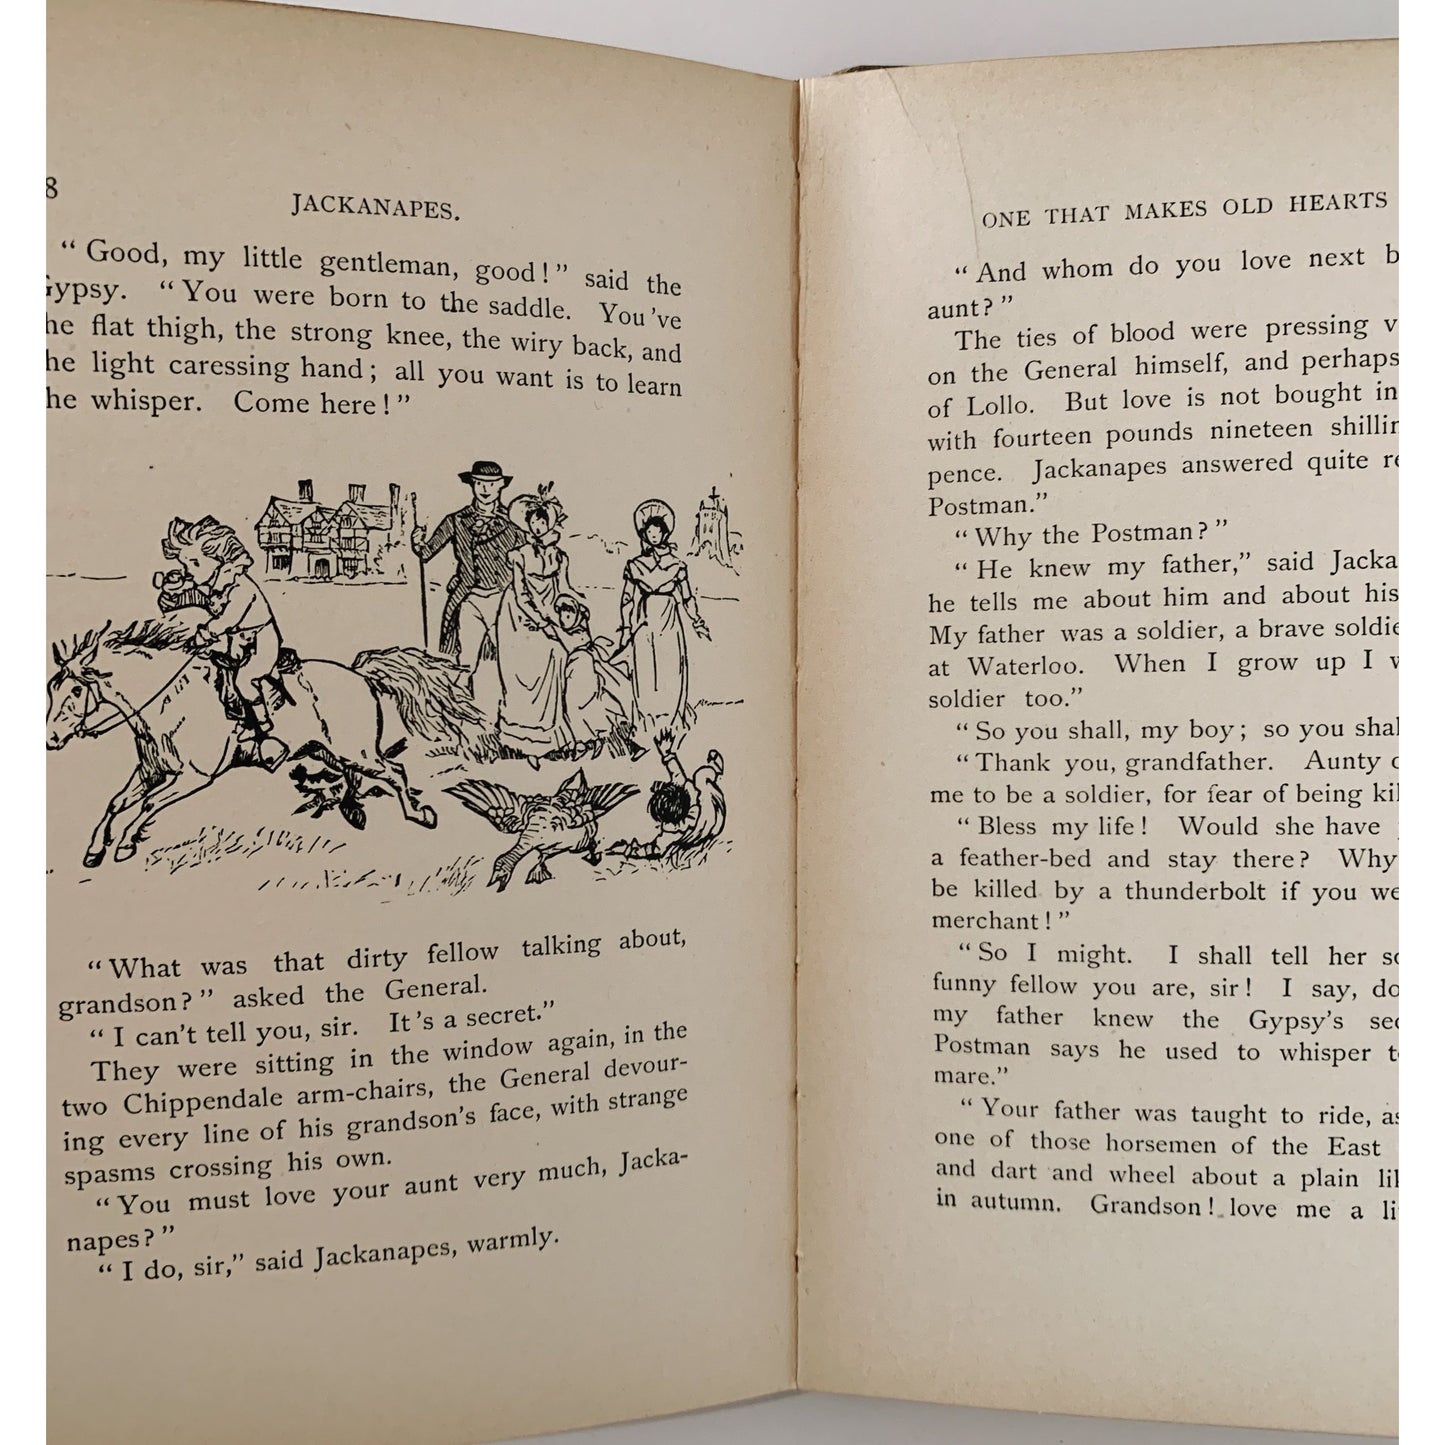 Jackanapes, Juliana Horatia Ewing, Rare, Randolph Caldecott, 1899, Hardcover